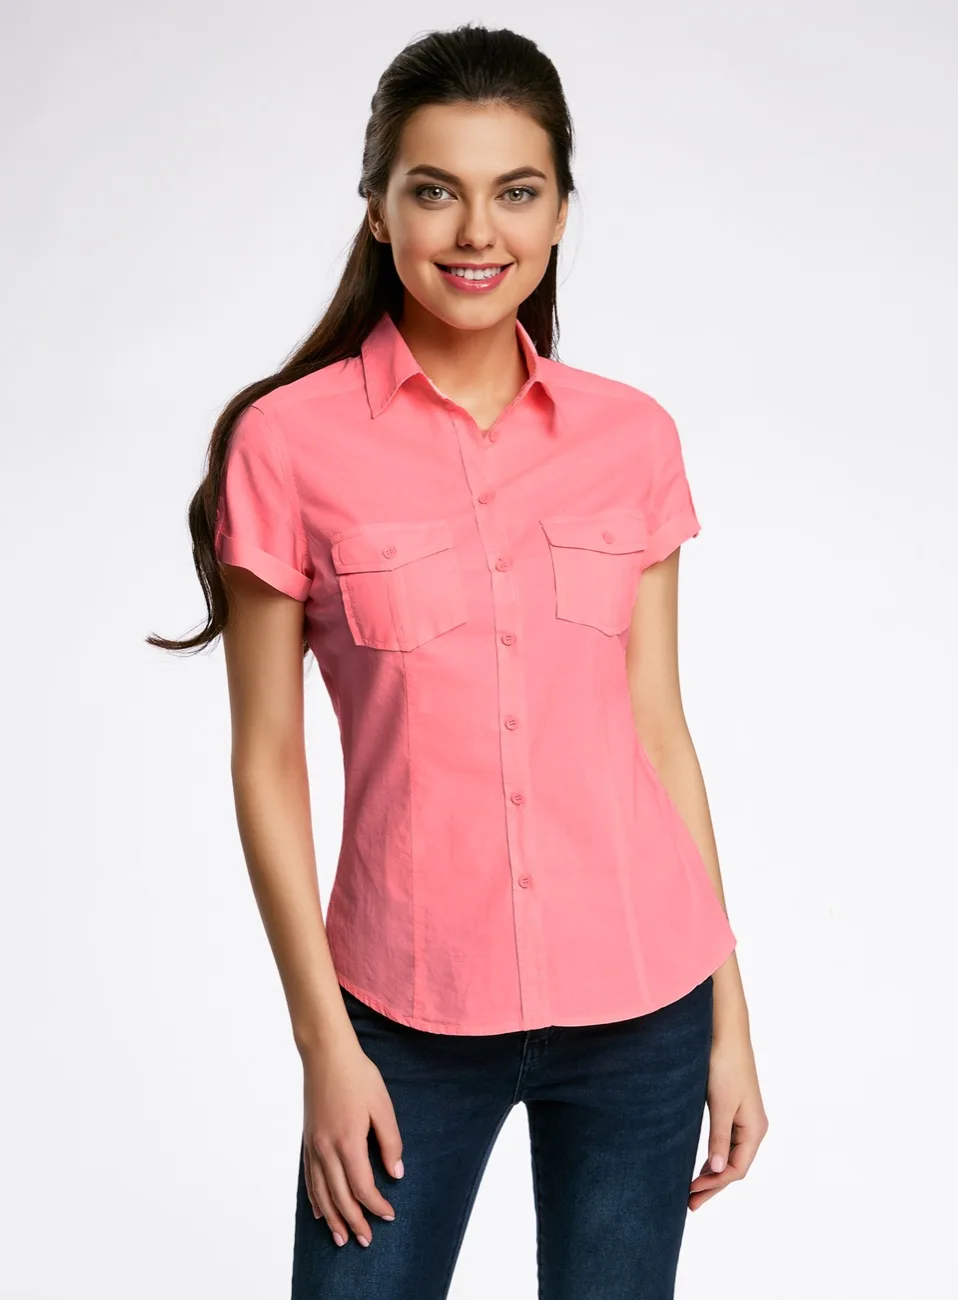 Блузки недорого интернет магазин. Рубашка женская. Блуза с коротким рукавом. Рубашка с коротким рукавом женская. Розовая рубашка женская.